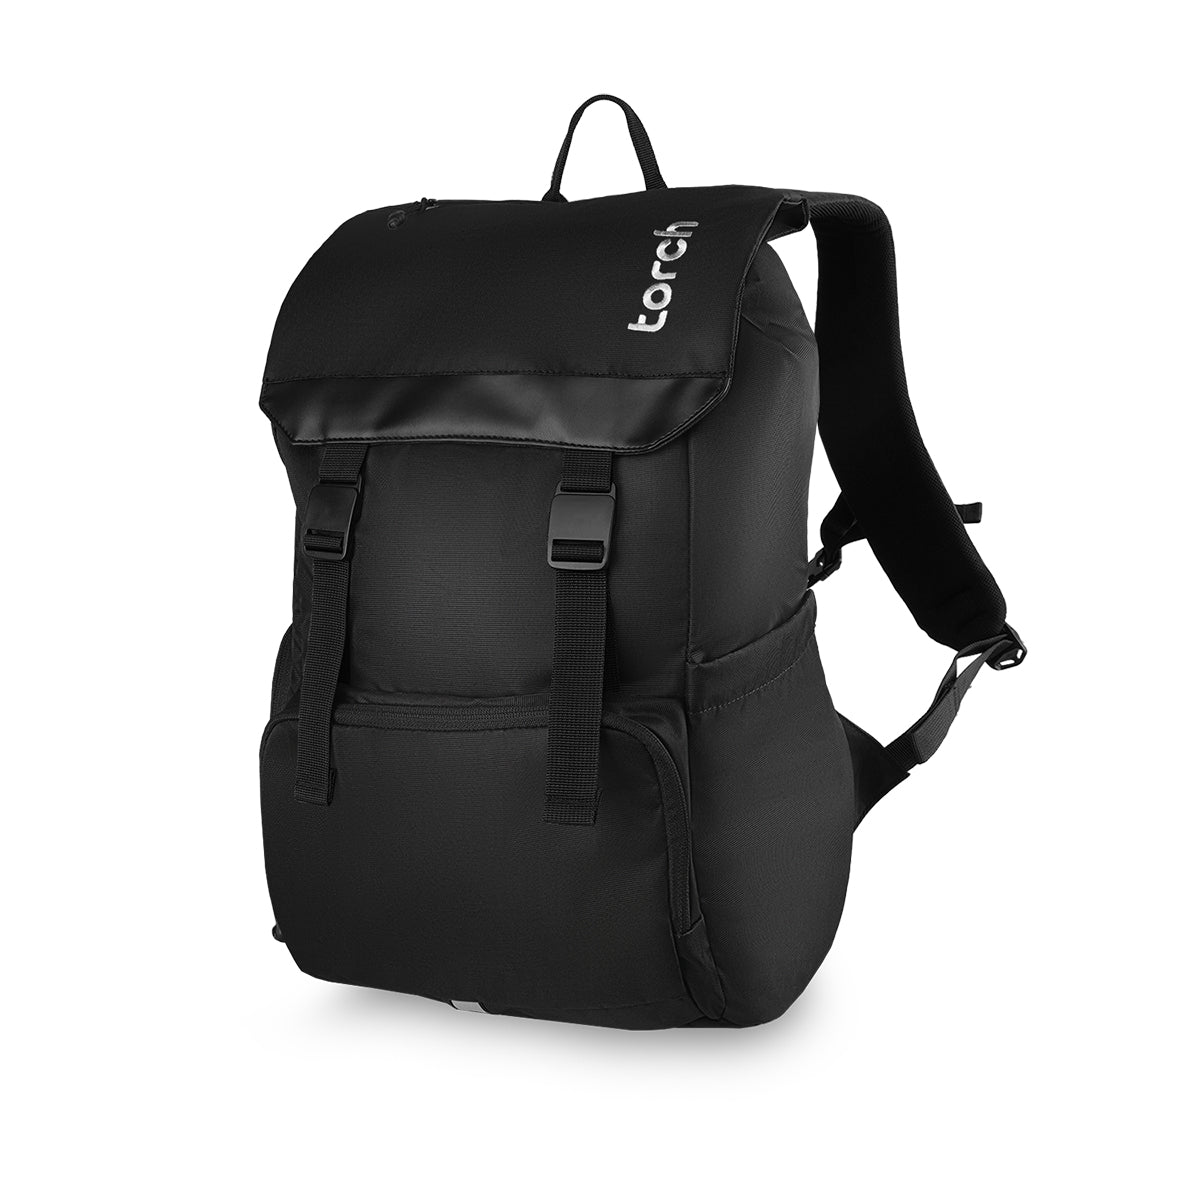 Paket Back To School - Gatra Backpack Gratis Farra Tumbler + Oder Keychain D